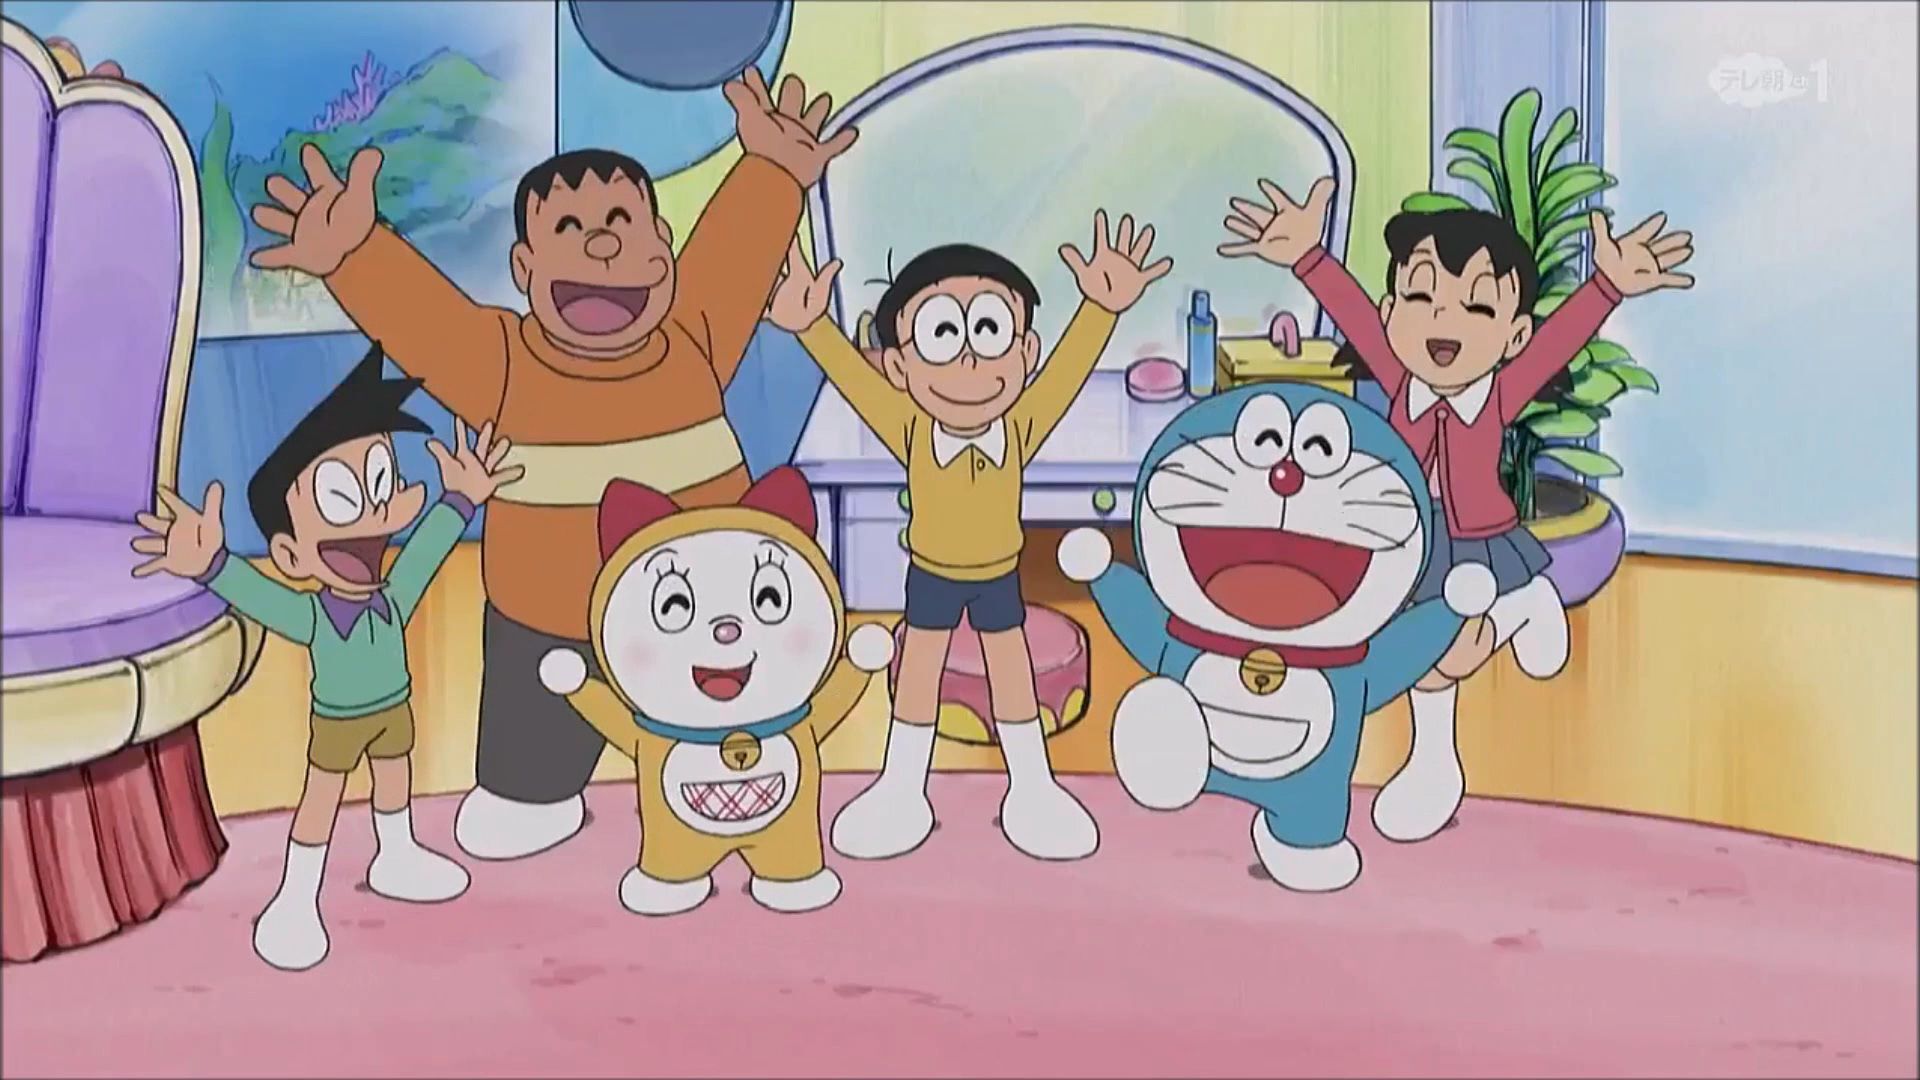 Bạn muốn tìm hiểu về các nhân vật trong bộ truyện tranh Doraemon, nhưng không biết bắt đầu từ đâu? Cùng truy cập vào Wiki Doraemon để khám phá sâu hơn, tìm hiểu đầy đủ về lịch sử và các chi tiết của nhân vật yêu thích của bạn.